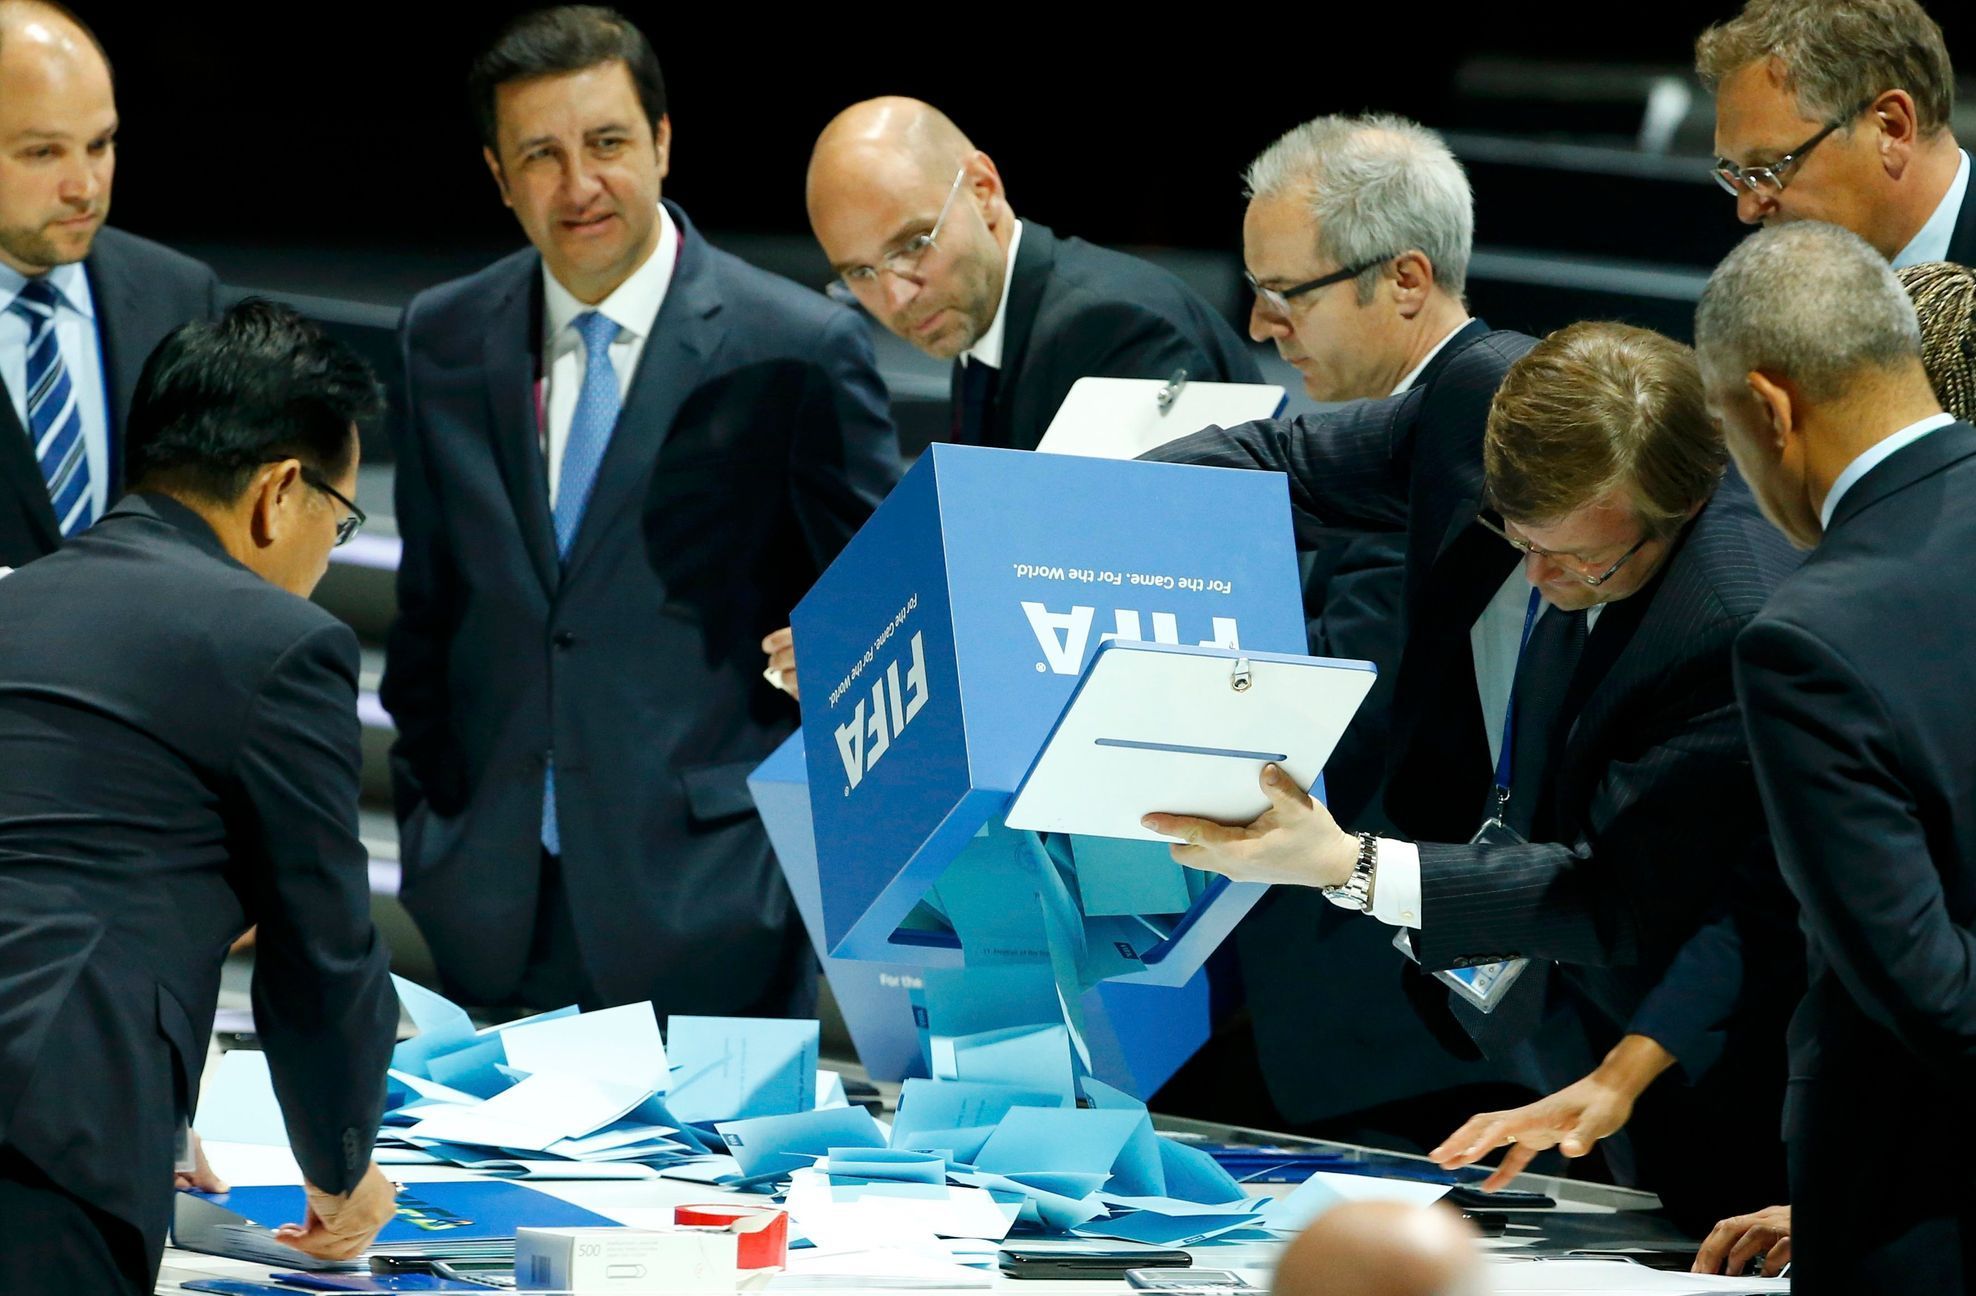 Počítání hlasů na kongresu FIFA 2015